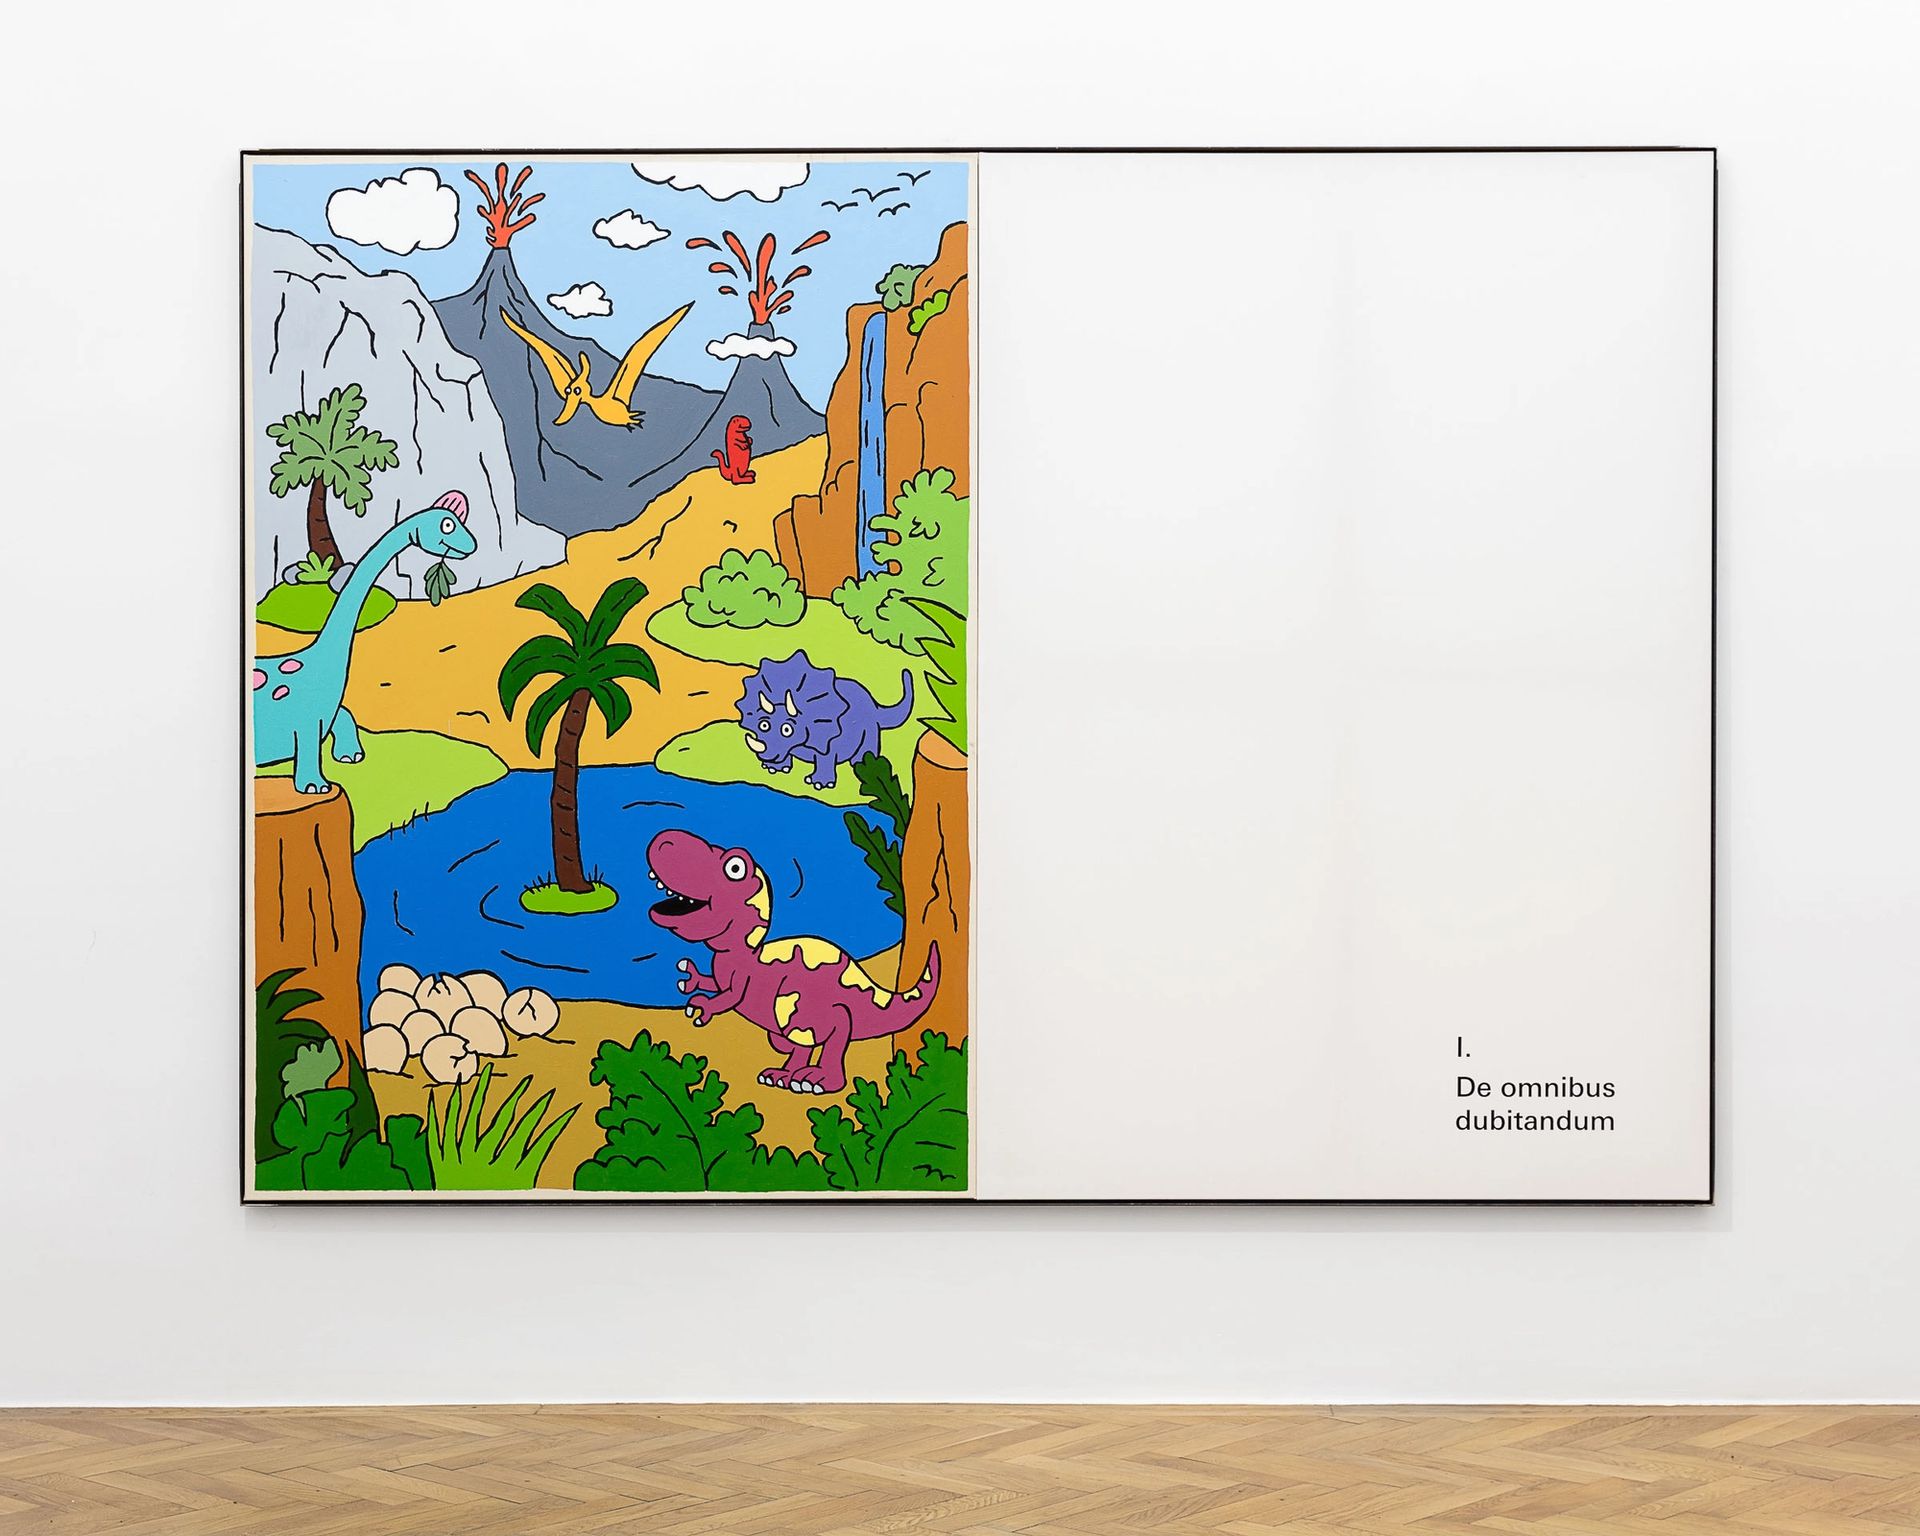 ART N MORE, De omnibus dubitandum, 2018, oil and transfer print on canvas in artist frame, 200x280cm